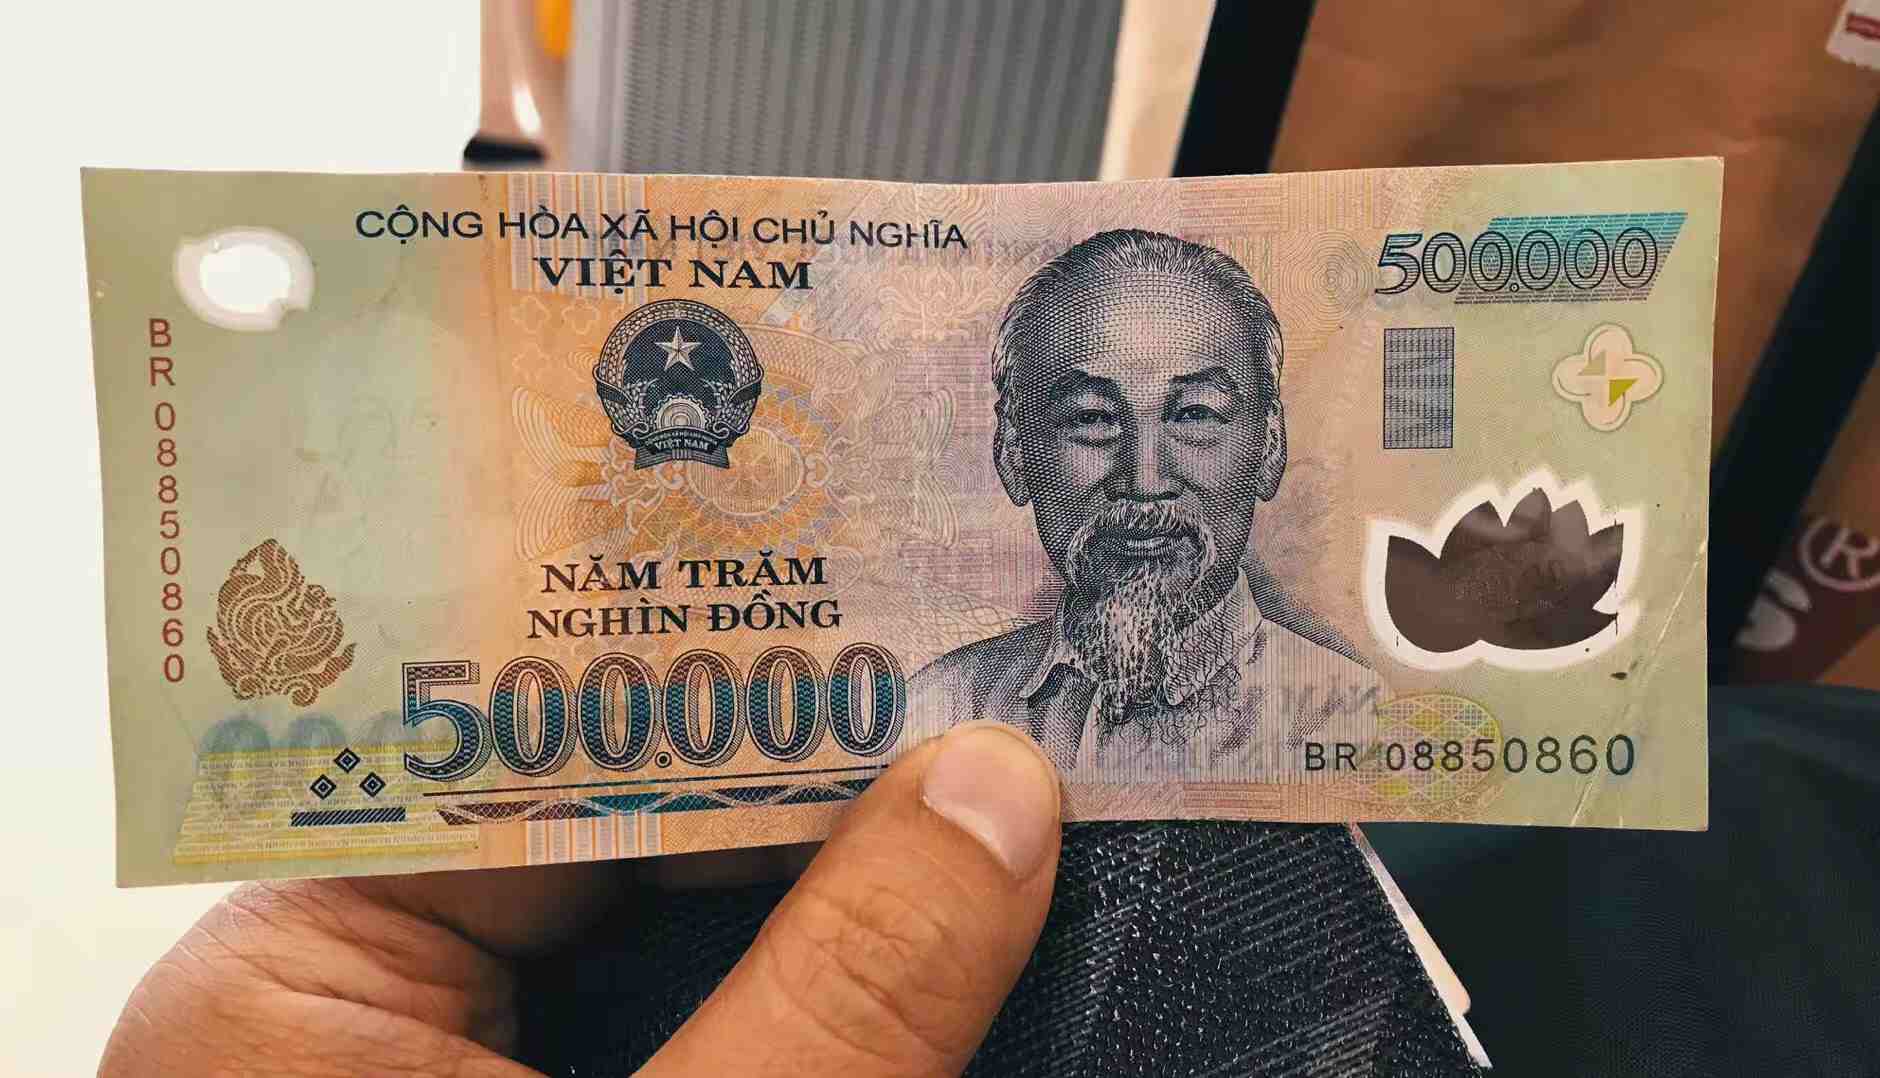 在曼谷机场换了一些越南盾,面额很大,50万越南盾约合150元人民币